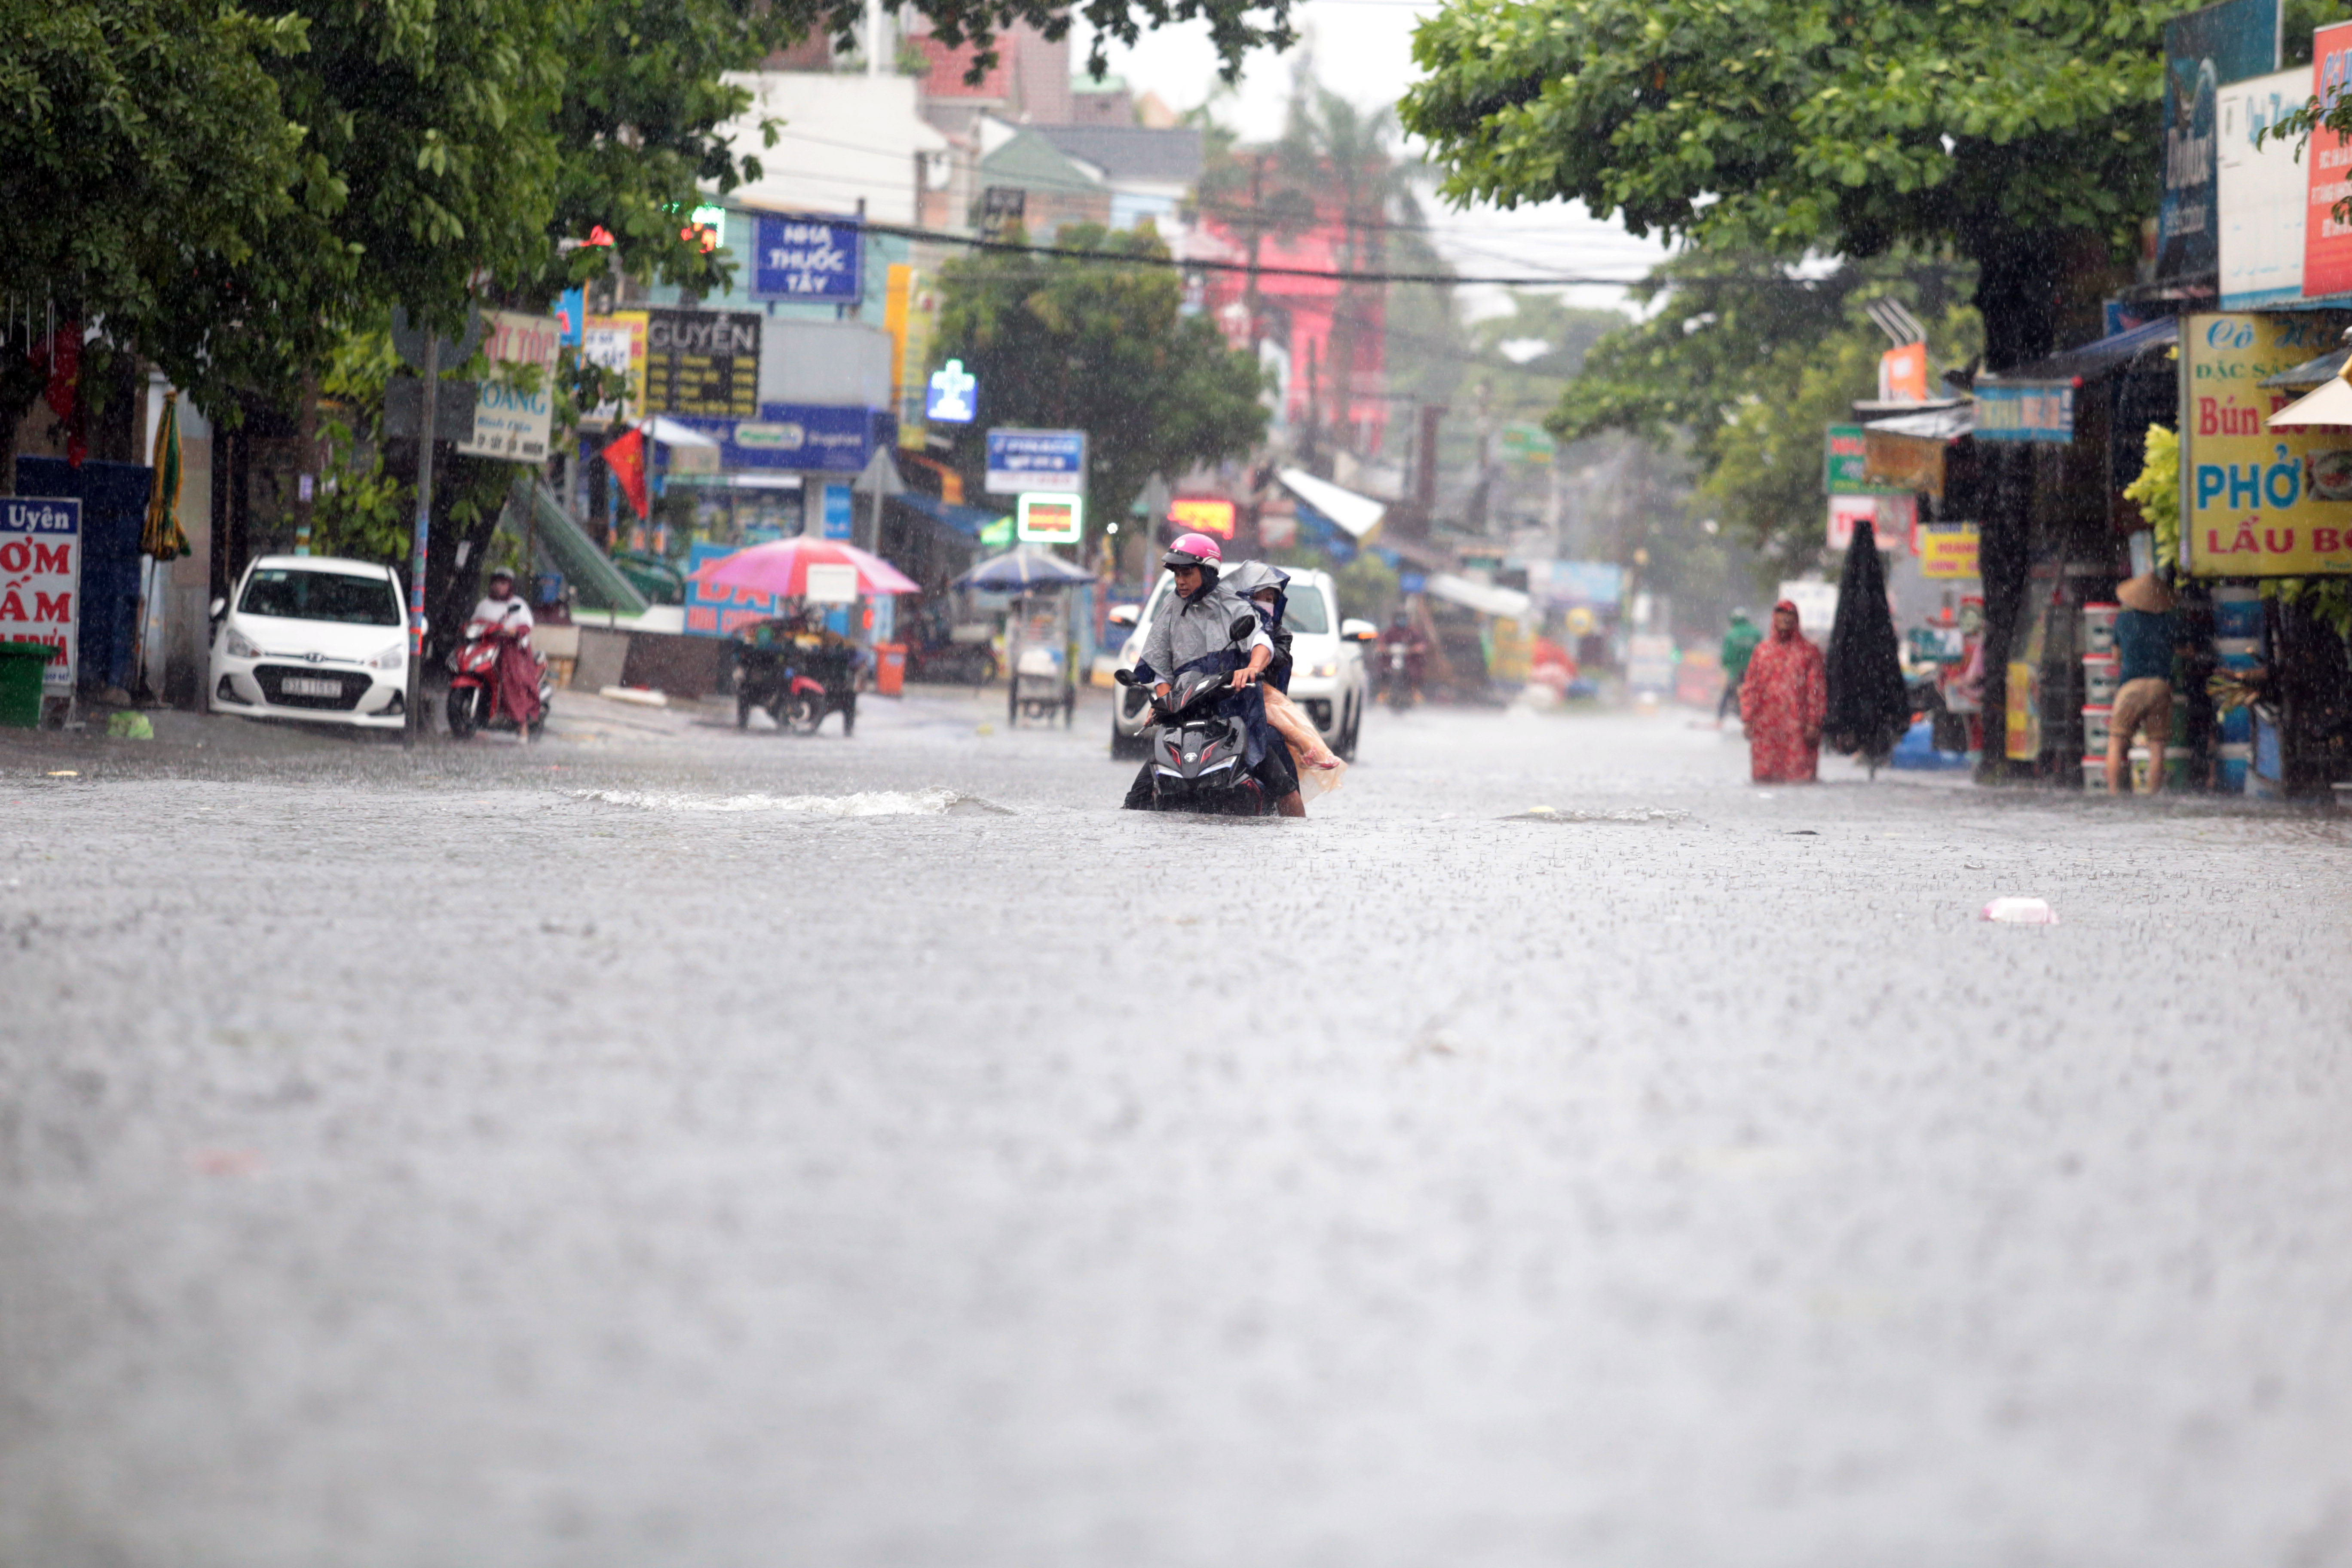 Sài Gòn mưa tầm tã, xe máy ngập gần tới yên, ô tô chết máy bồng bềnh trong nước - 16